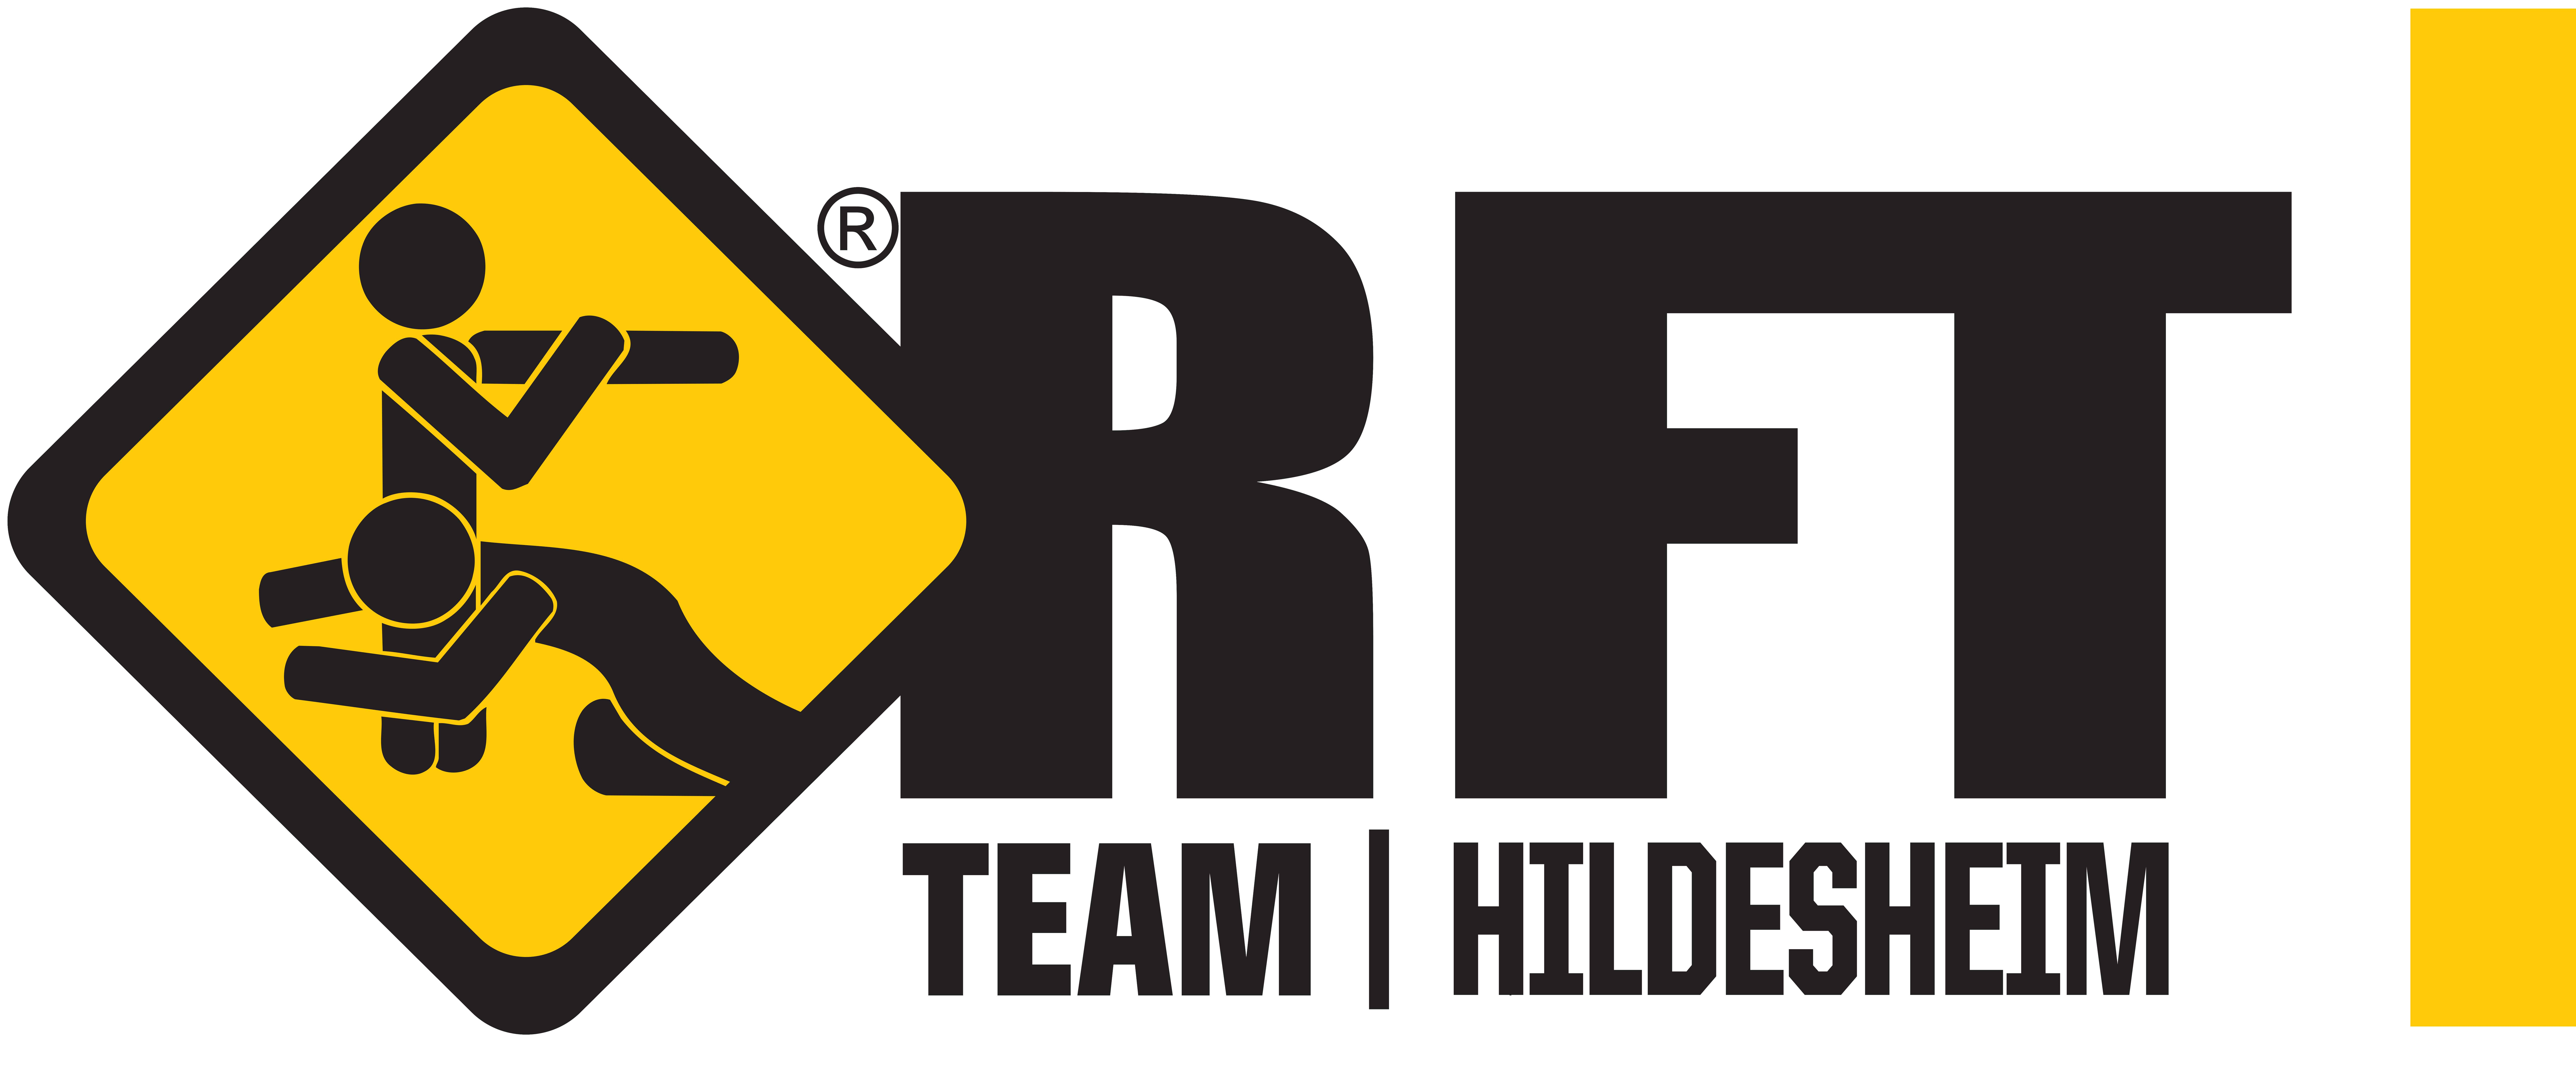 logo-rft-team-hildesheim_full_2015